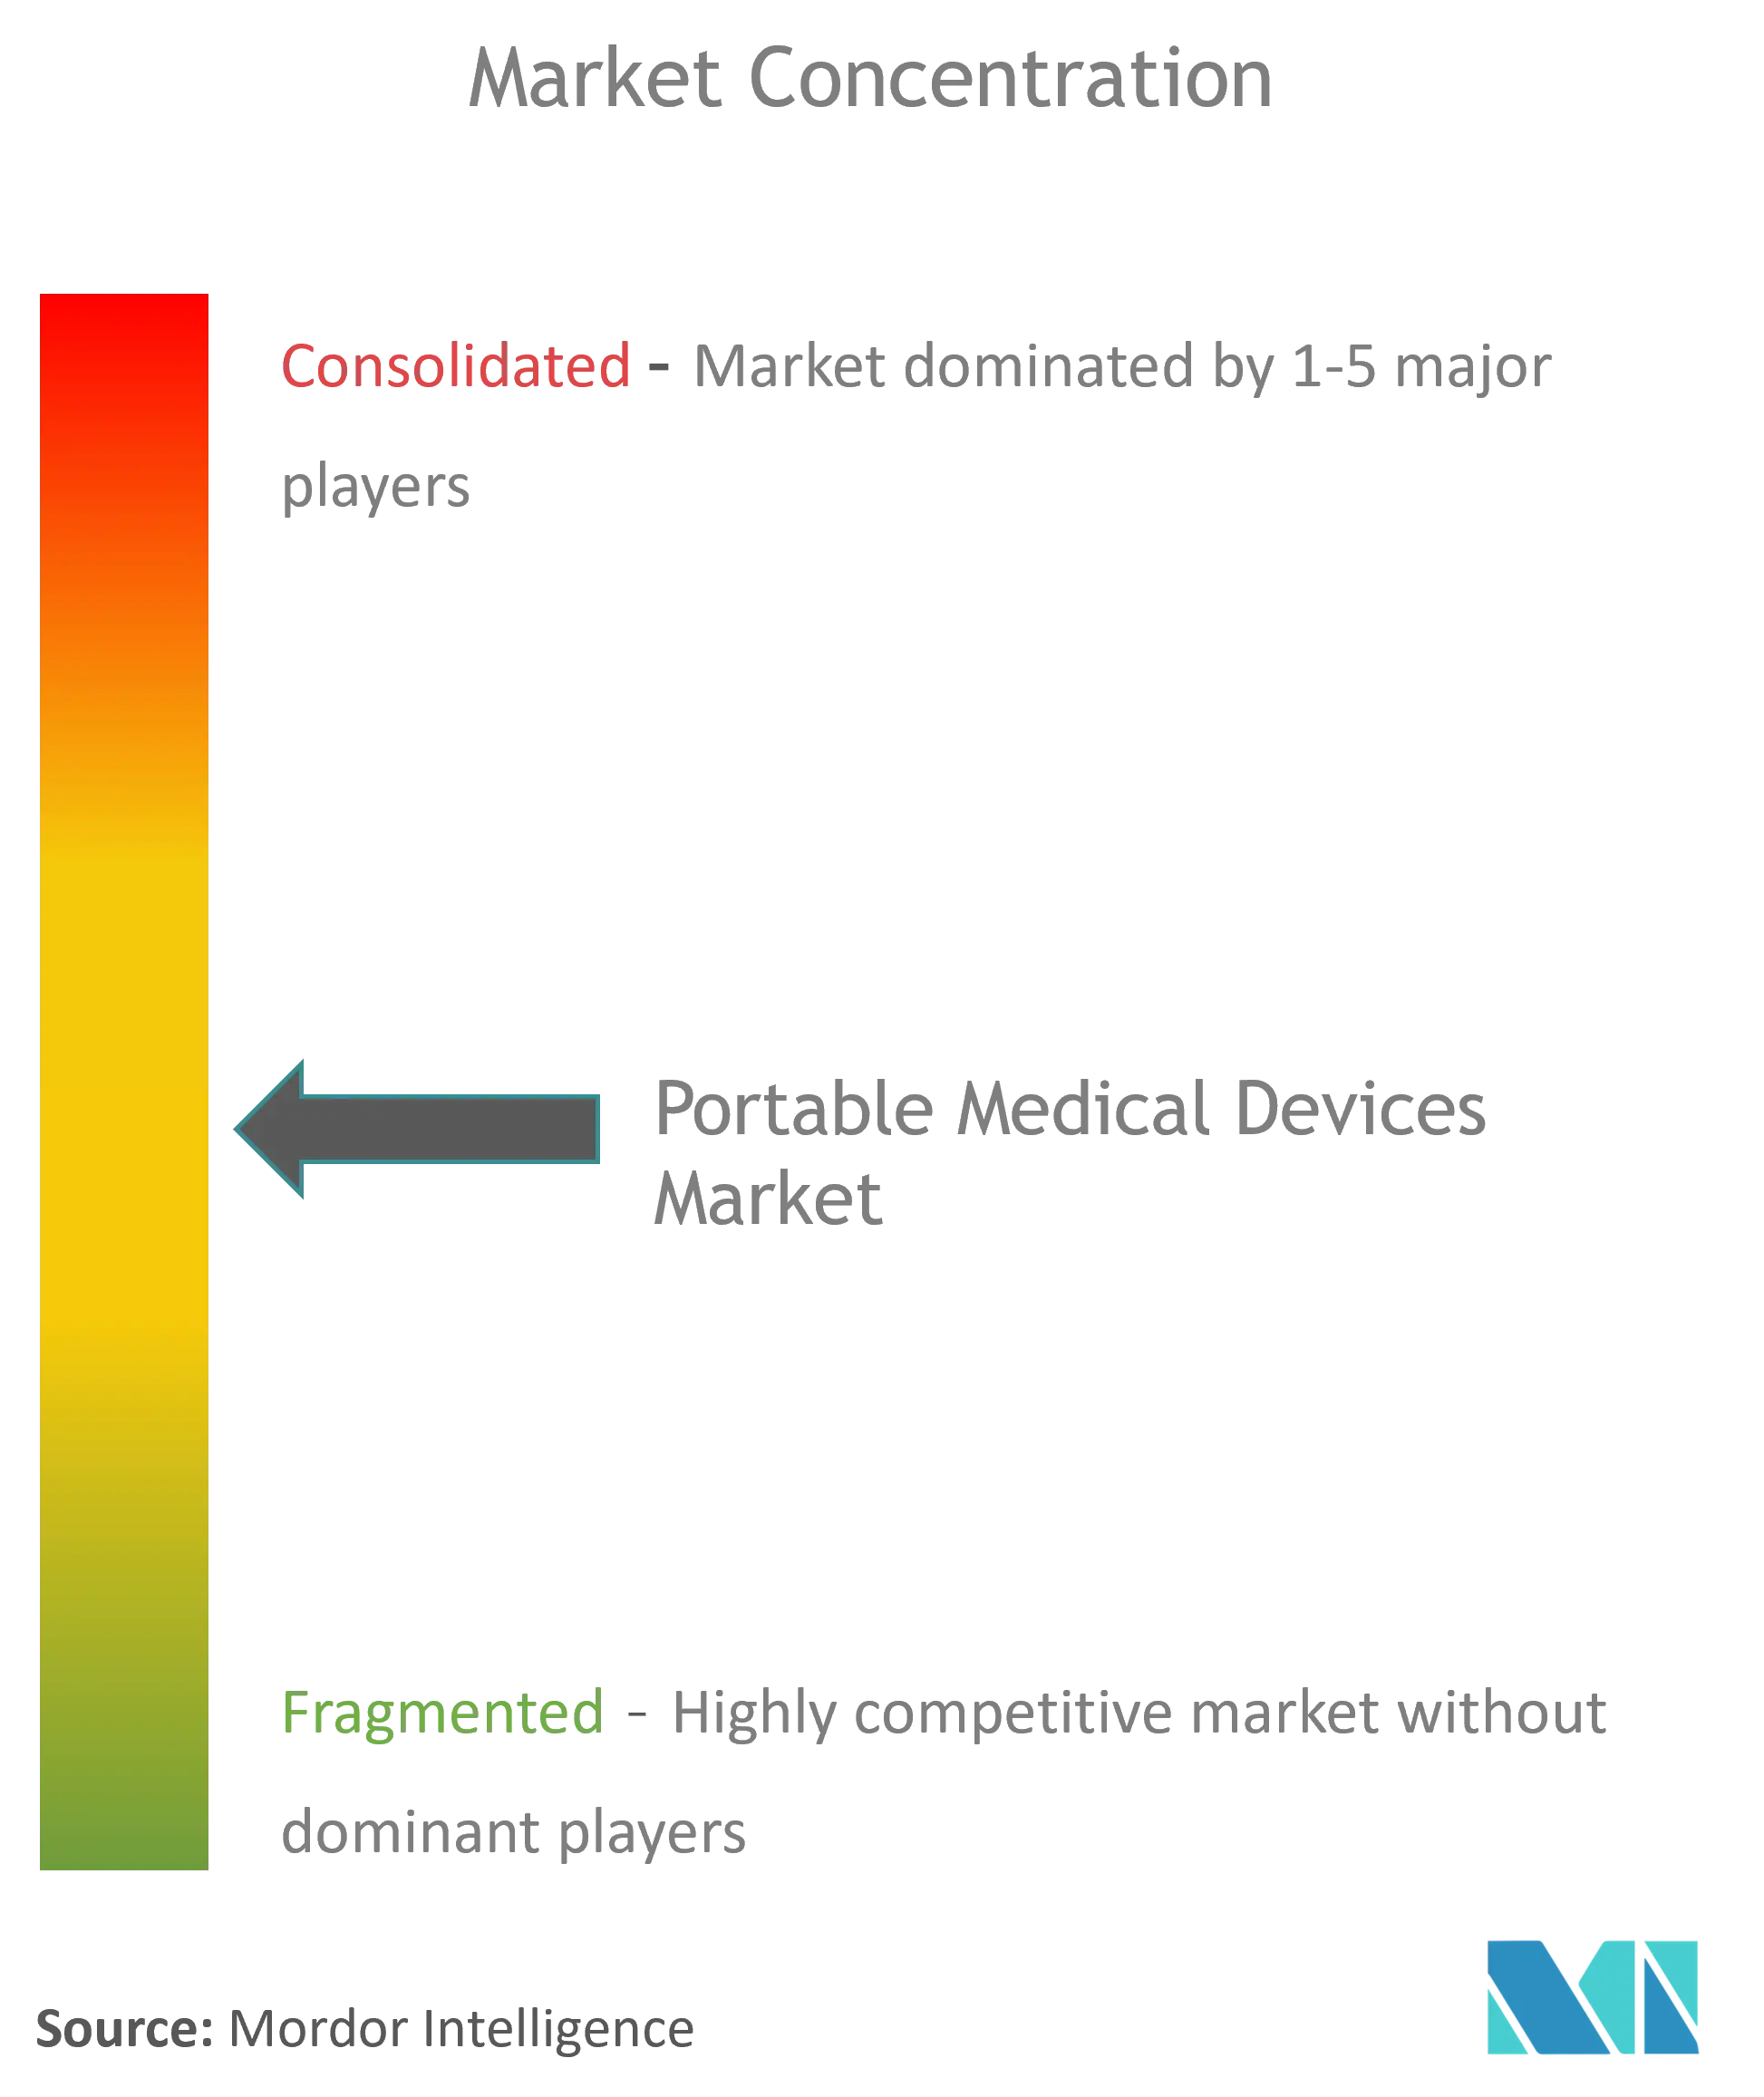 Marktkonzentration für tragbare medizinische elektronische Produkte